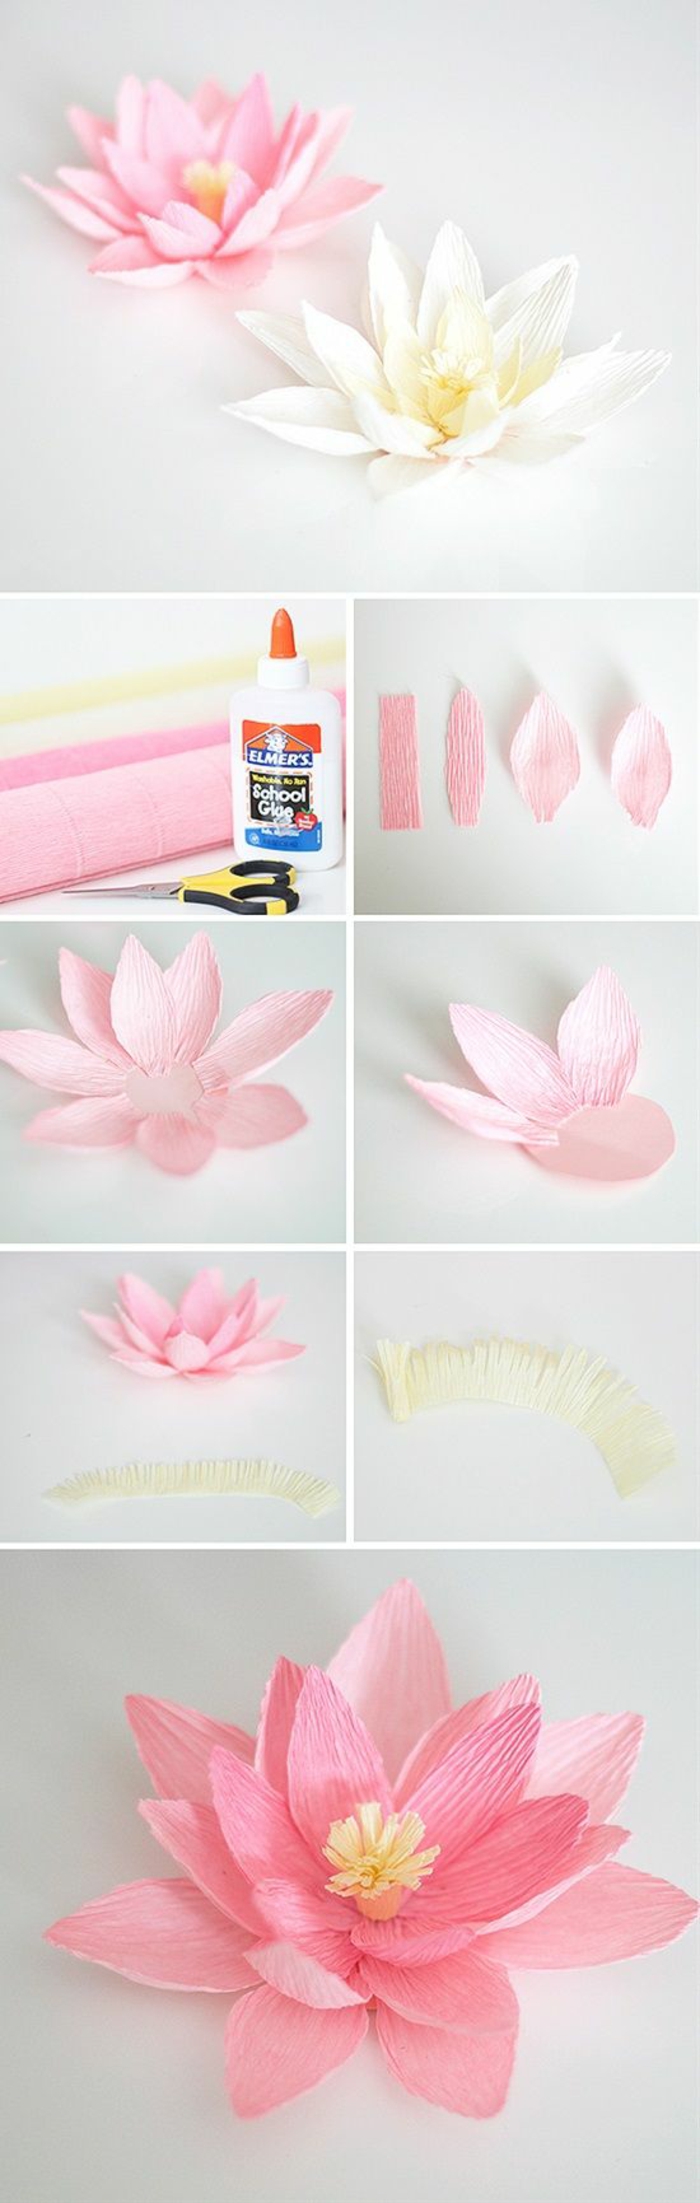 como hacer flores de papel bonitas para decorar la casa, flor de loto en dos colores hecho a mano, originales ideas de manualidades 